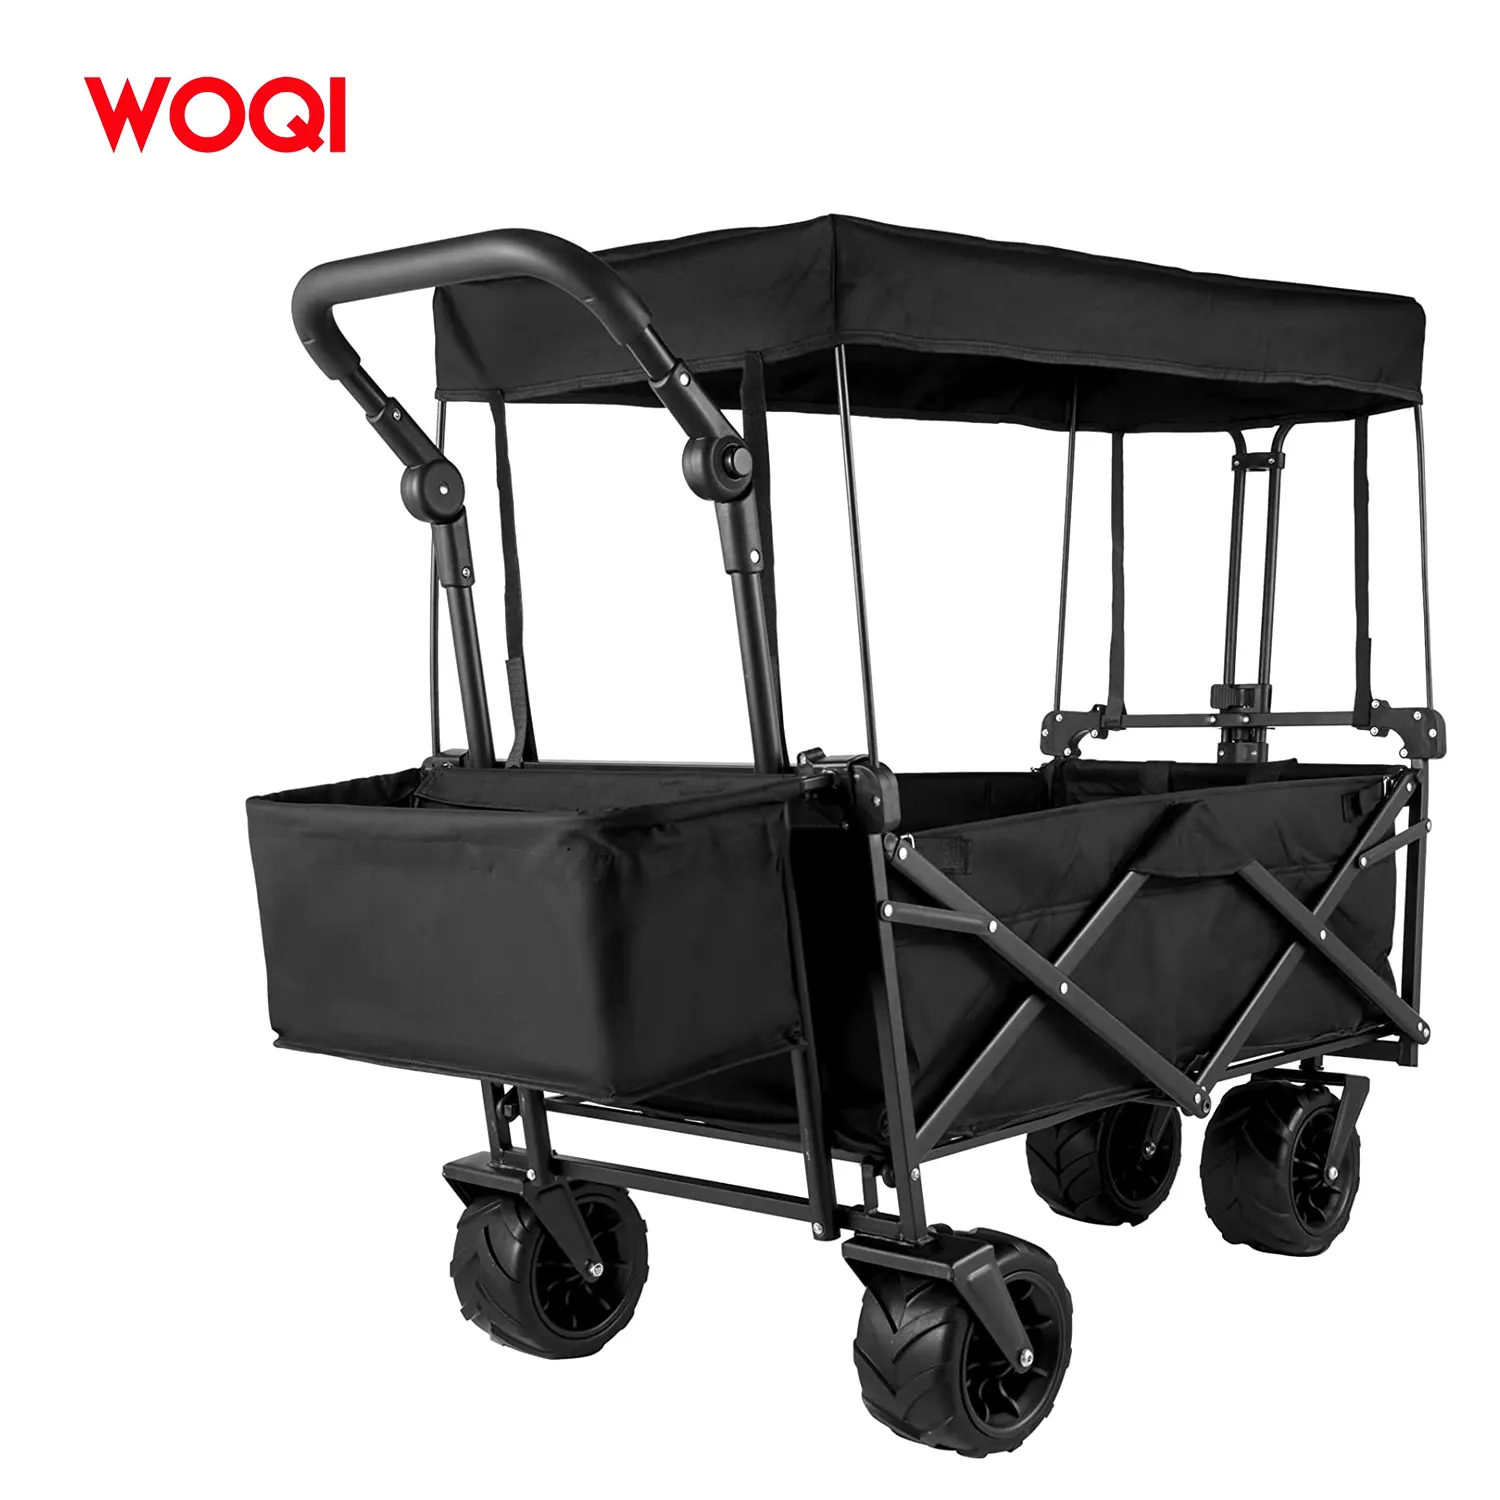 WOQI Hot Selling Großer zusammen klappbarer Gartenwagen-Klapp wagen mit abnehmbarem Baldachin